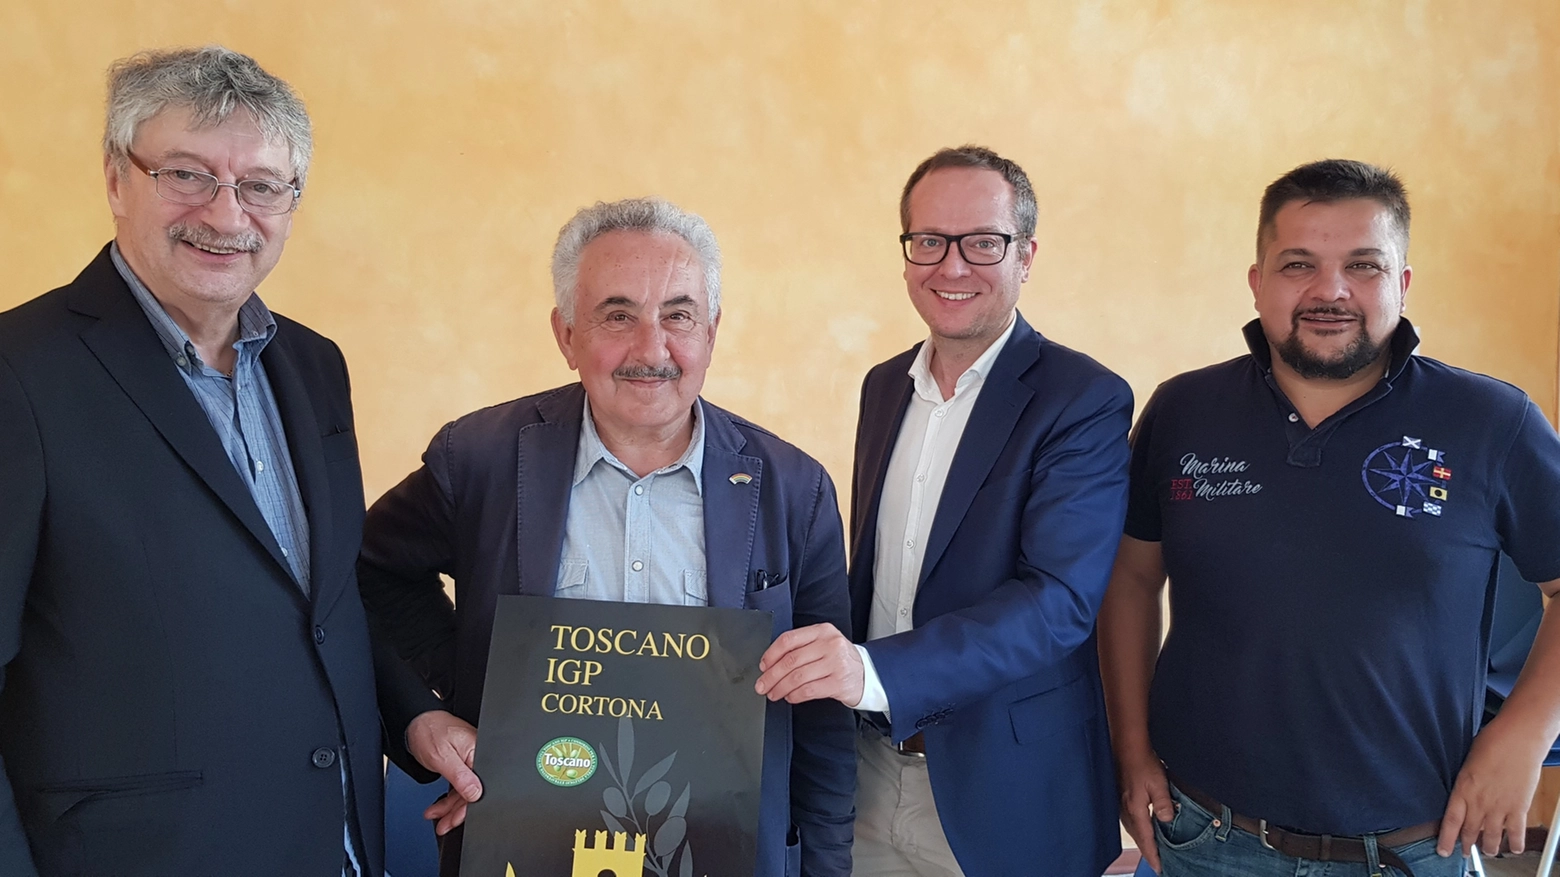 Presentazione del marchio Olio Igt Toscano Cortona 